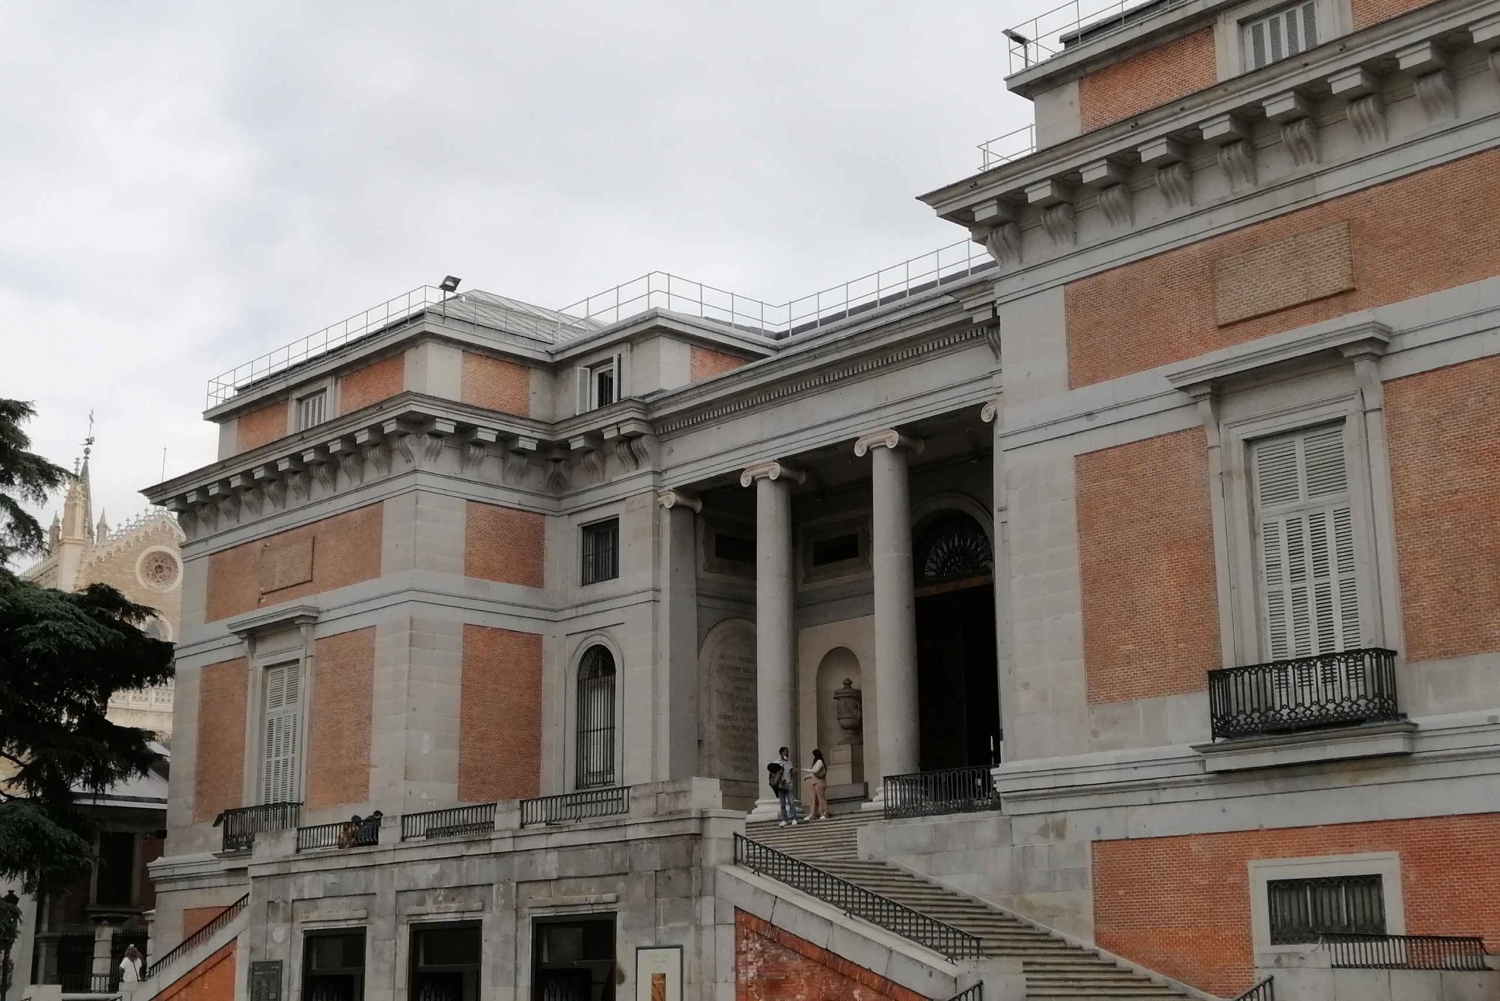 Madrid: Retiro Park Walking Tour med billet til Prado-museet